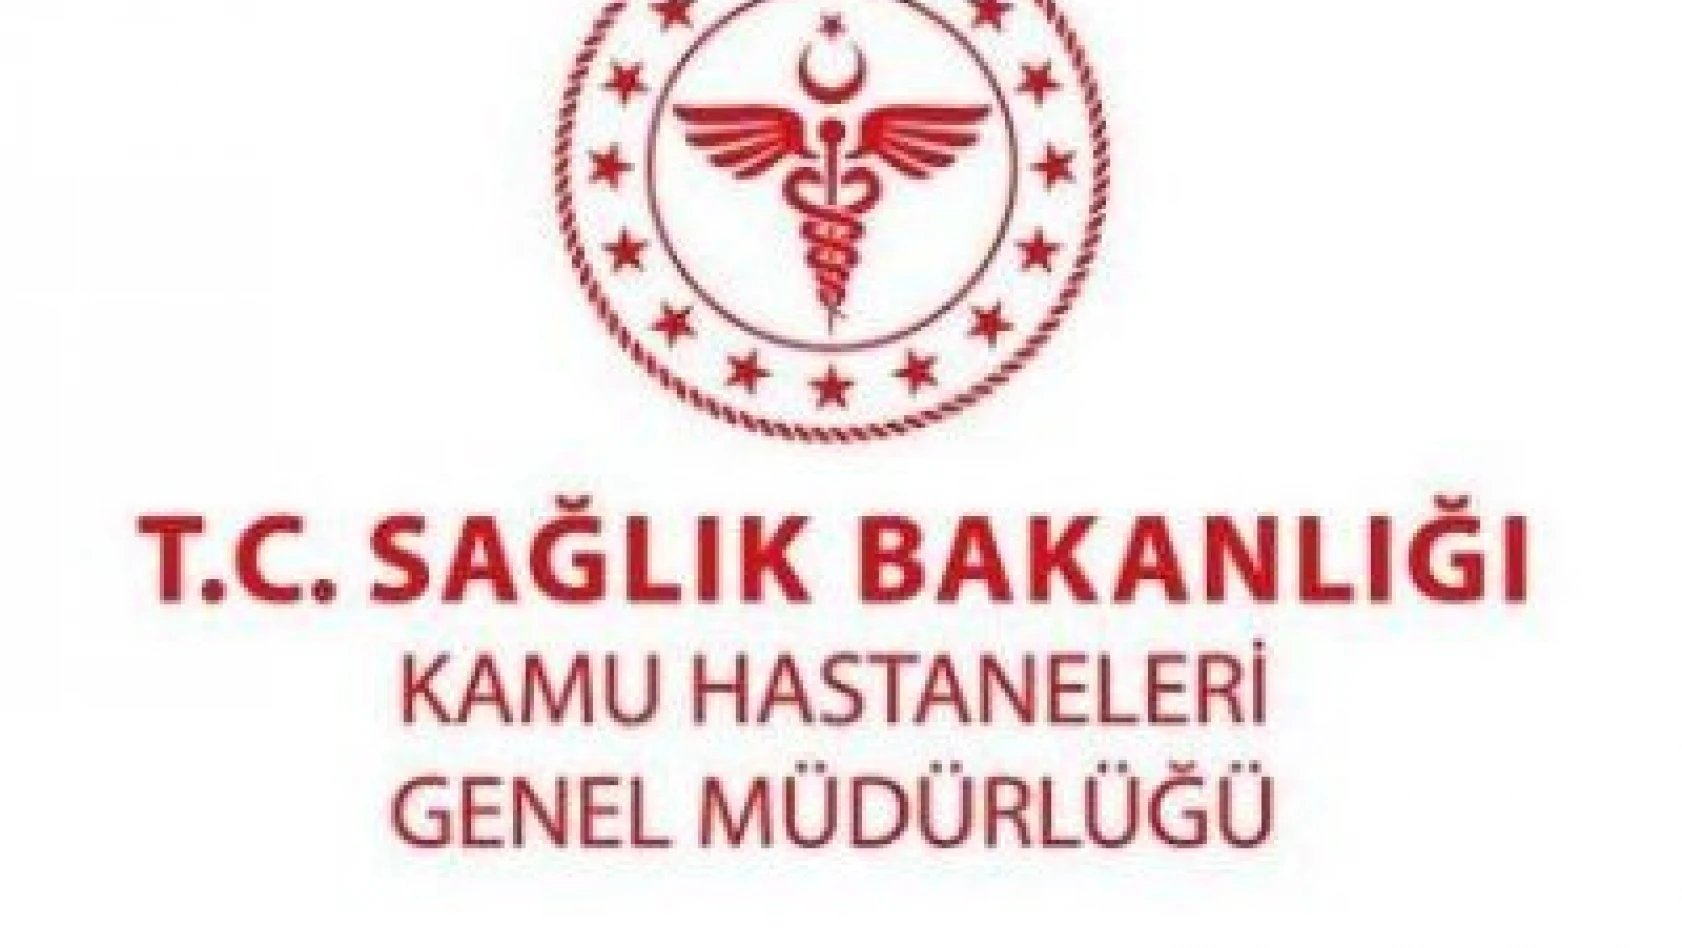 İstanbul 2.Bölge Kamu Hastaneleri Hizmetleri Başkanlığı inşaat yapım işi